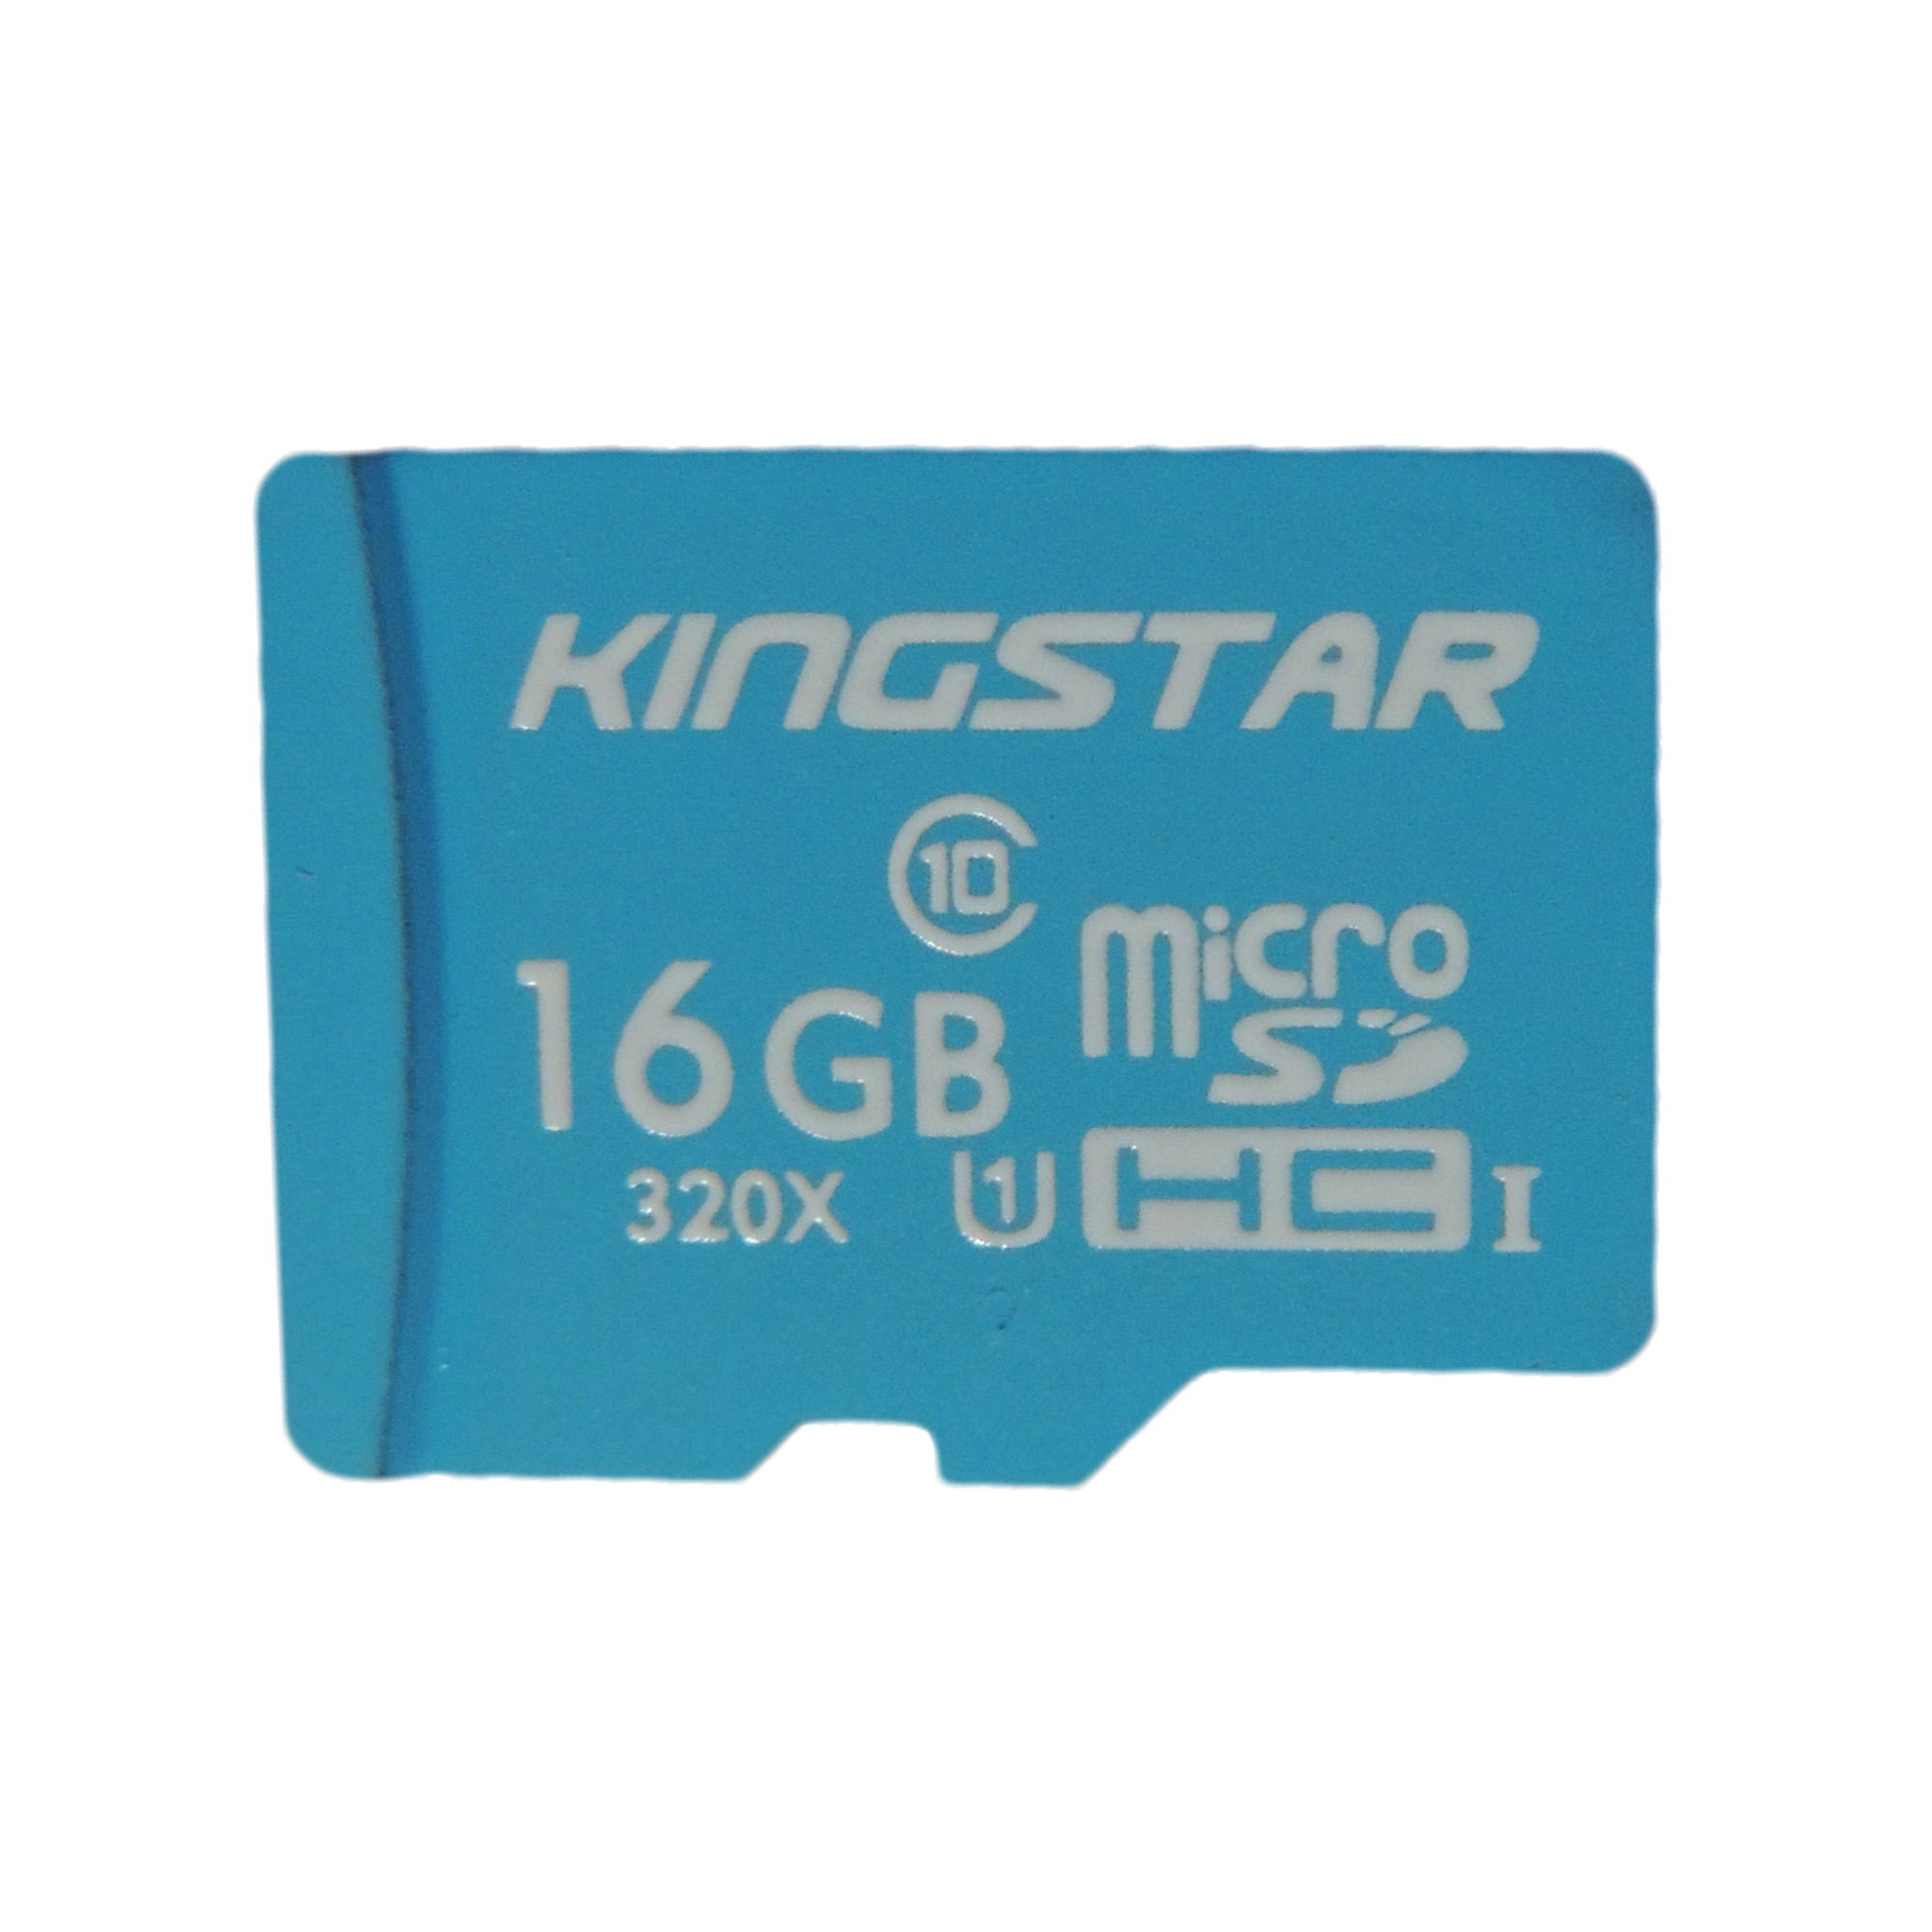 کارت حافظه microSDHC کینگ استار کلاس 10 استاندارد U1 سرعت 85MBps ظرفیت 16 گیگابایت